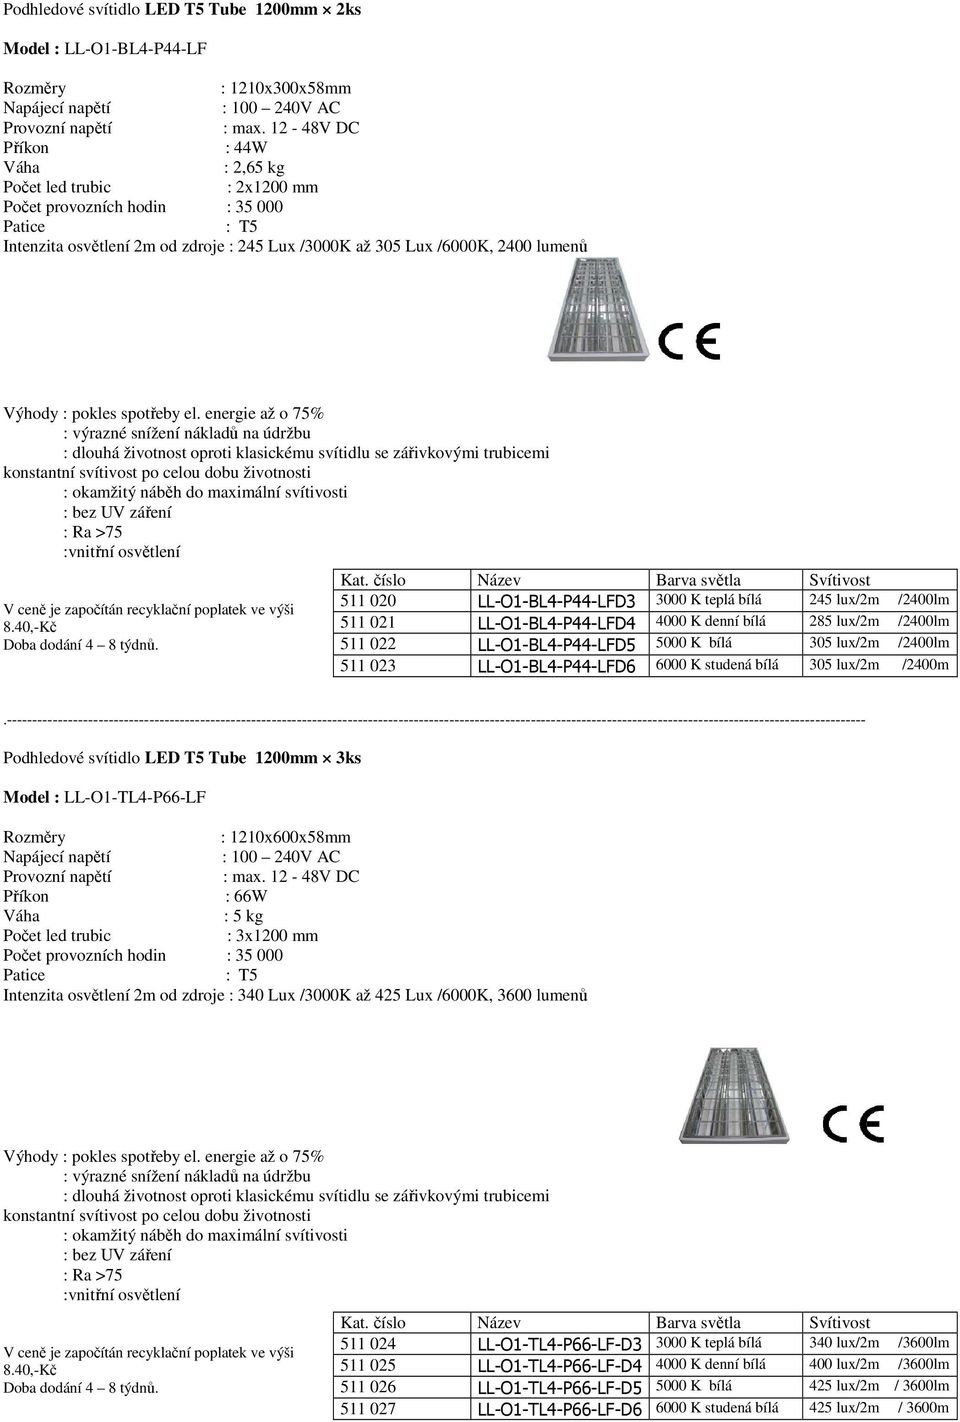 LL-O1-BL4-P44-LFD6 6000 K studená bílá 305 lux/2m /2400m Podhledové svítidlo LED T5 Tube 1200mm 3ks Model : LL-O1-TL4-P66-LF : 1210x600x58mm : 66W : 5 kg : 3x1200 mm Intenzita osvětlení 2m od zdroje